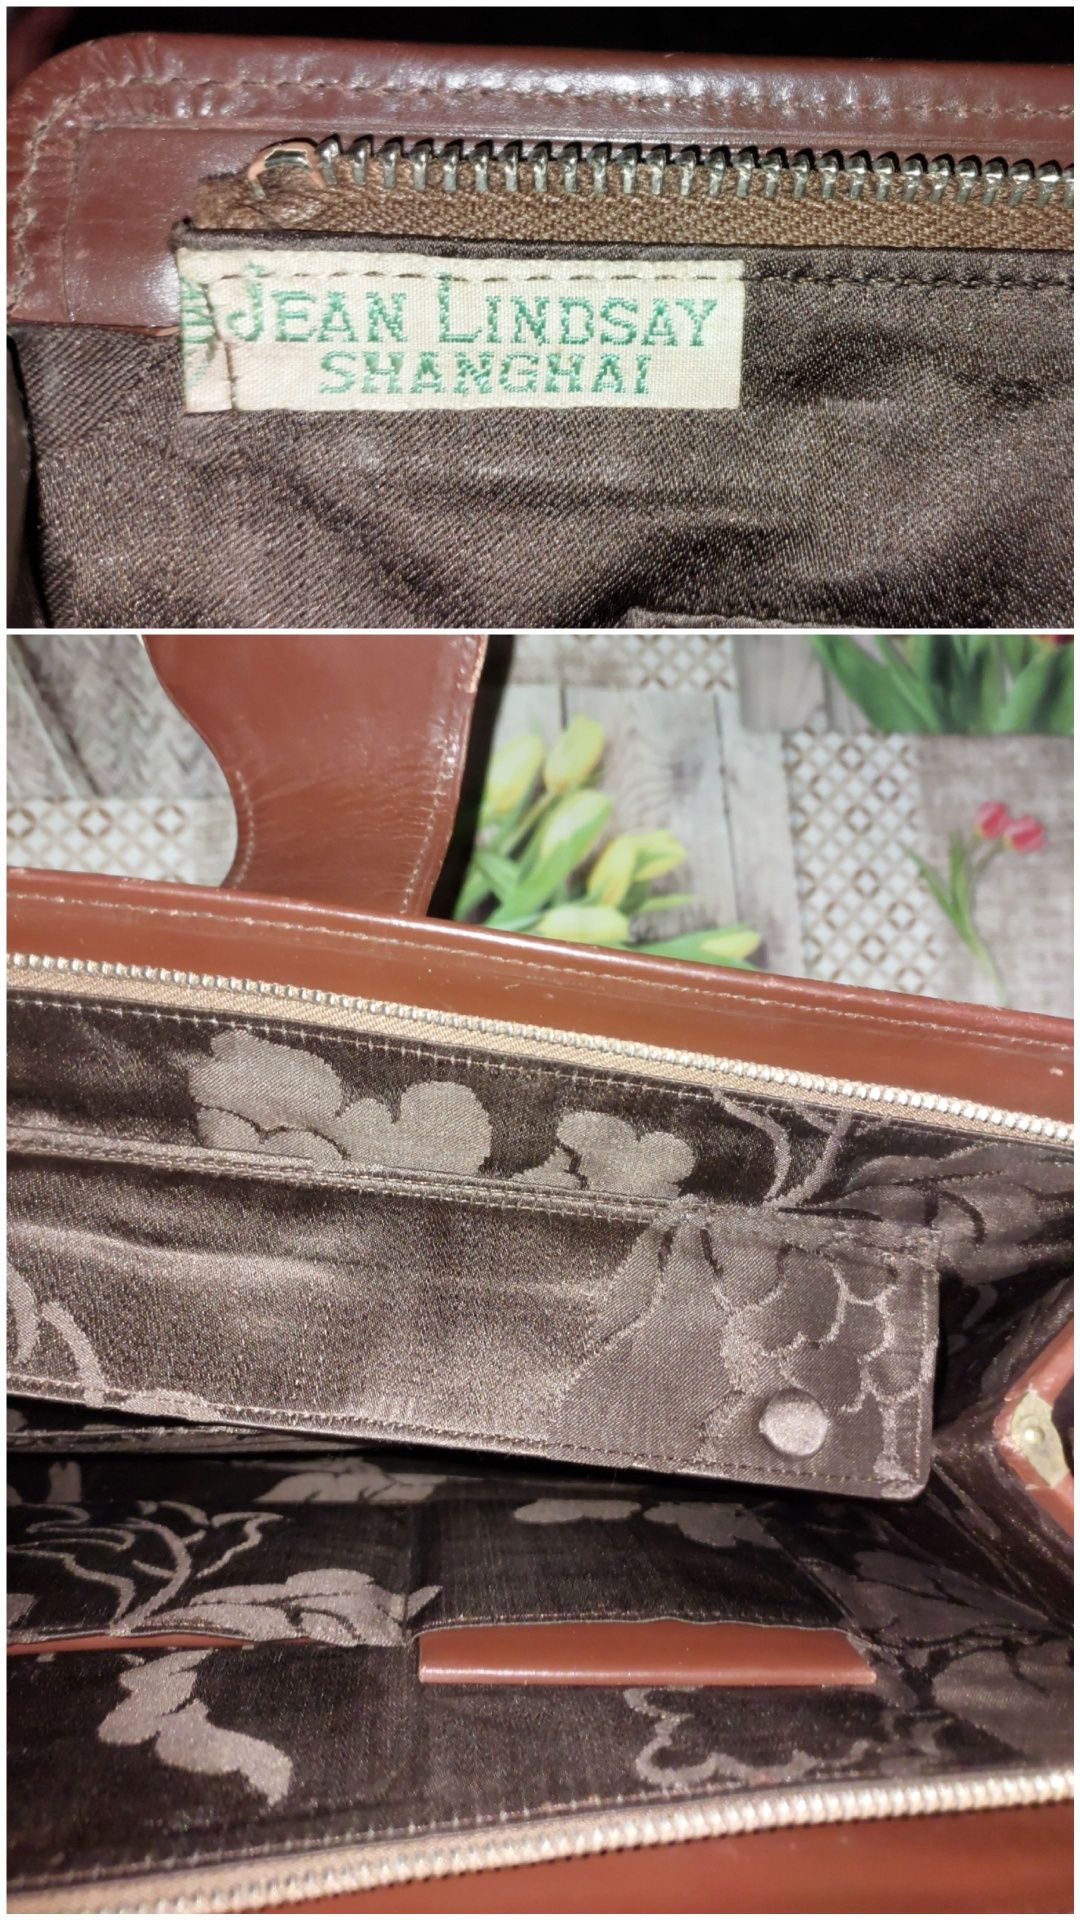 Вінтажна сумка клач Jean Lindsay Shanghai гаманець і зеркальце